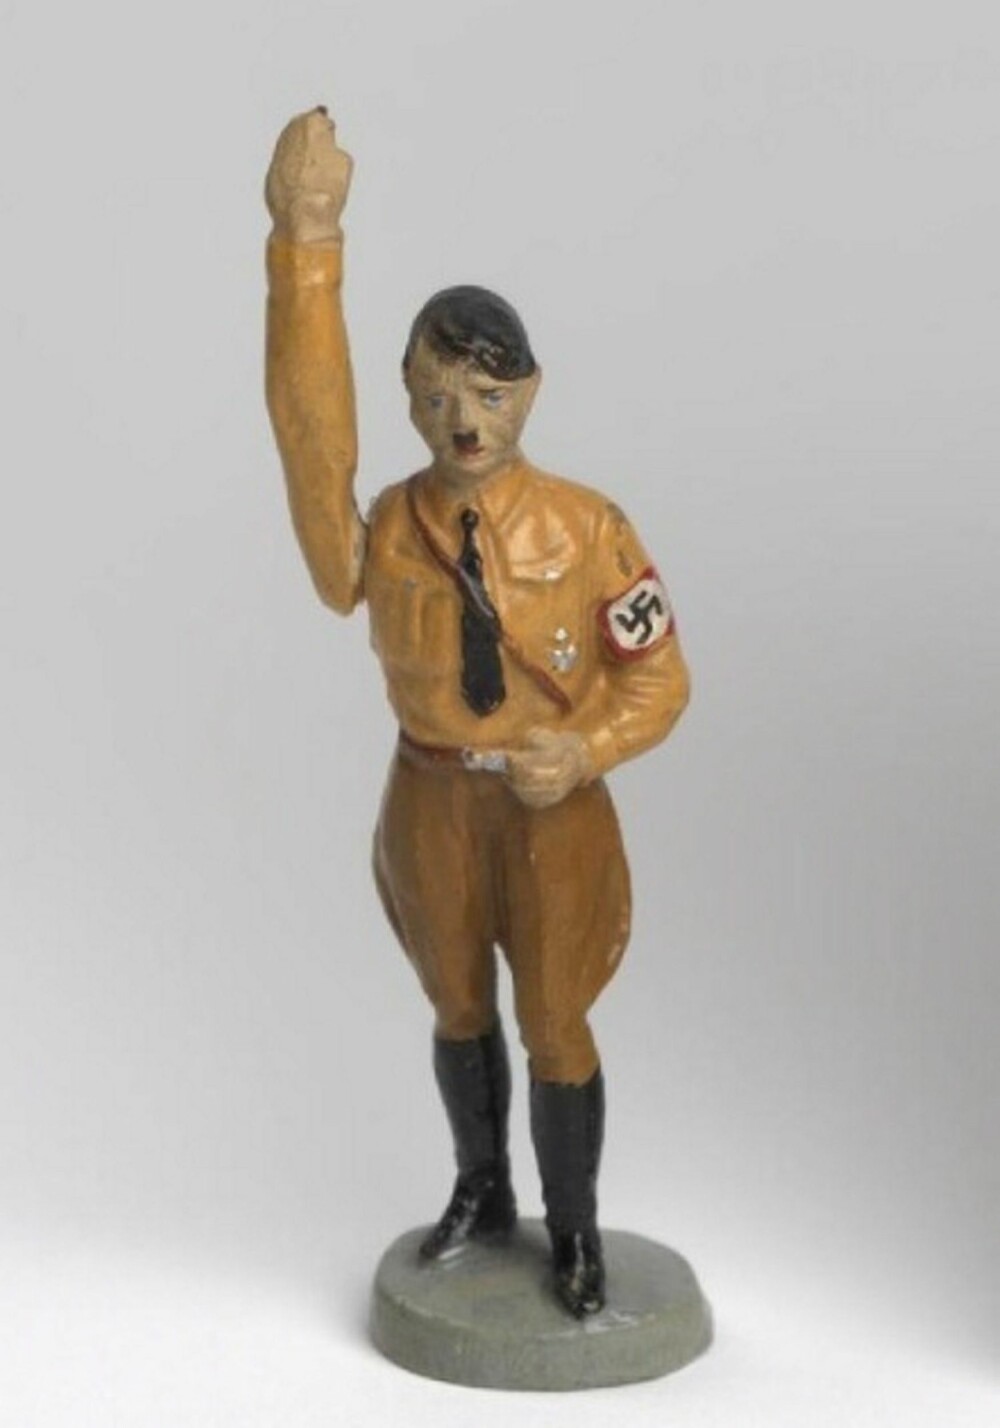 For tyske barn var Hitler det nærmeste man kunne komme en tysk superhelt. Her en populær Hitlerfigur som utførte en skikkelig zieg heil med strak arm når man dro i en liten spak på ryggen.